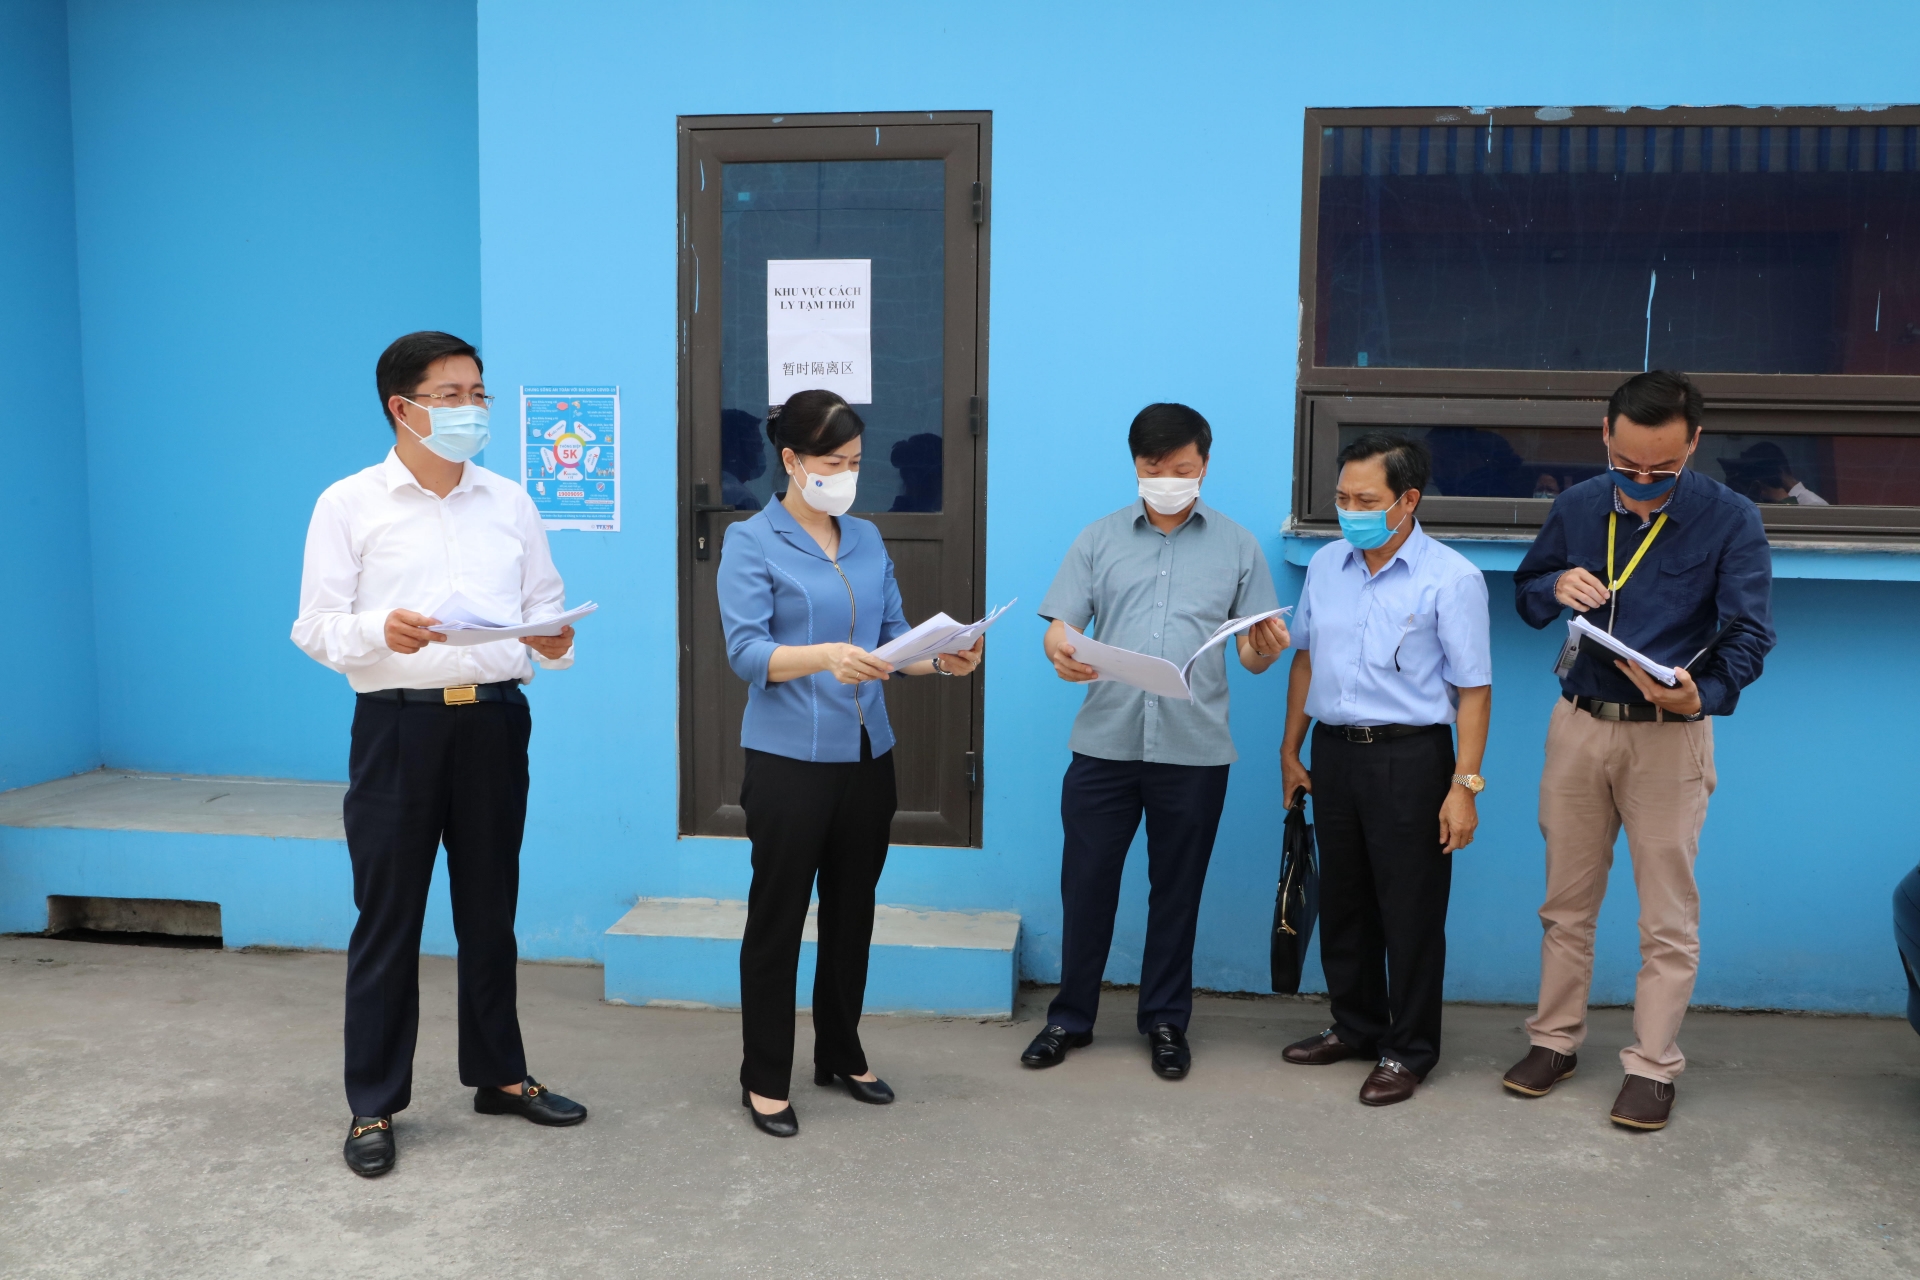 Bí thư Tỉnh ủy Bắc Ninh kiểm tra công tác phòng, chống dịch tại KCN VSIP